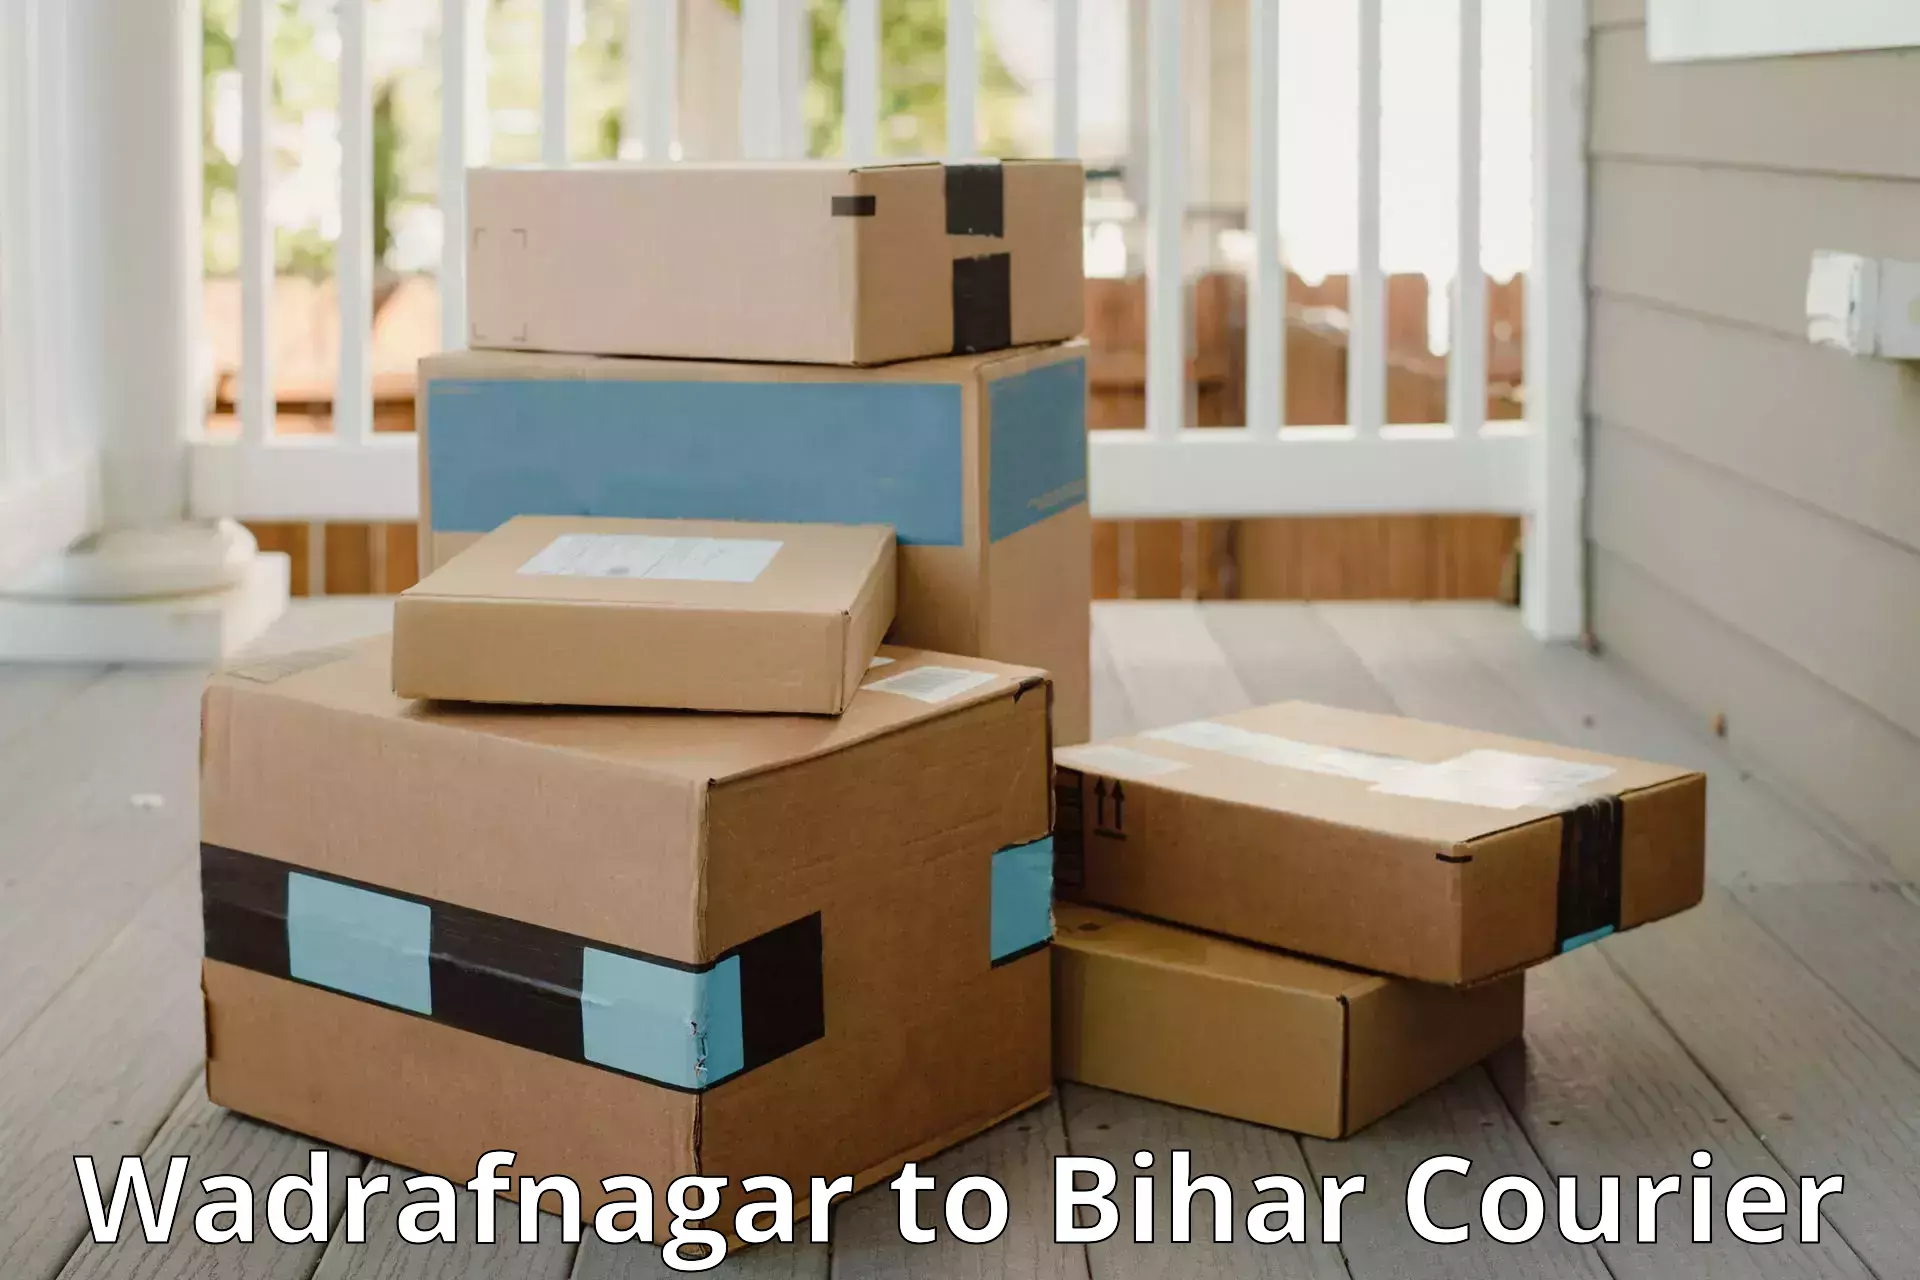 Efficient baggage courier system Wadrafnagar to Piro